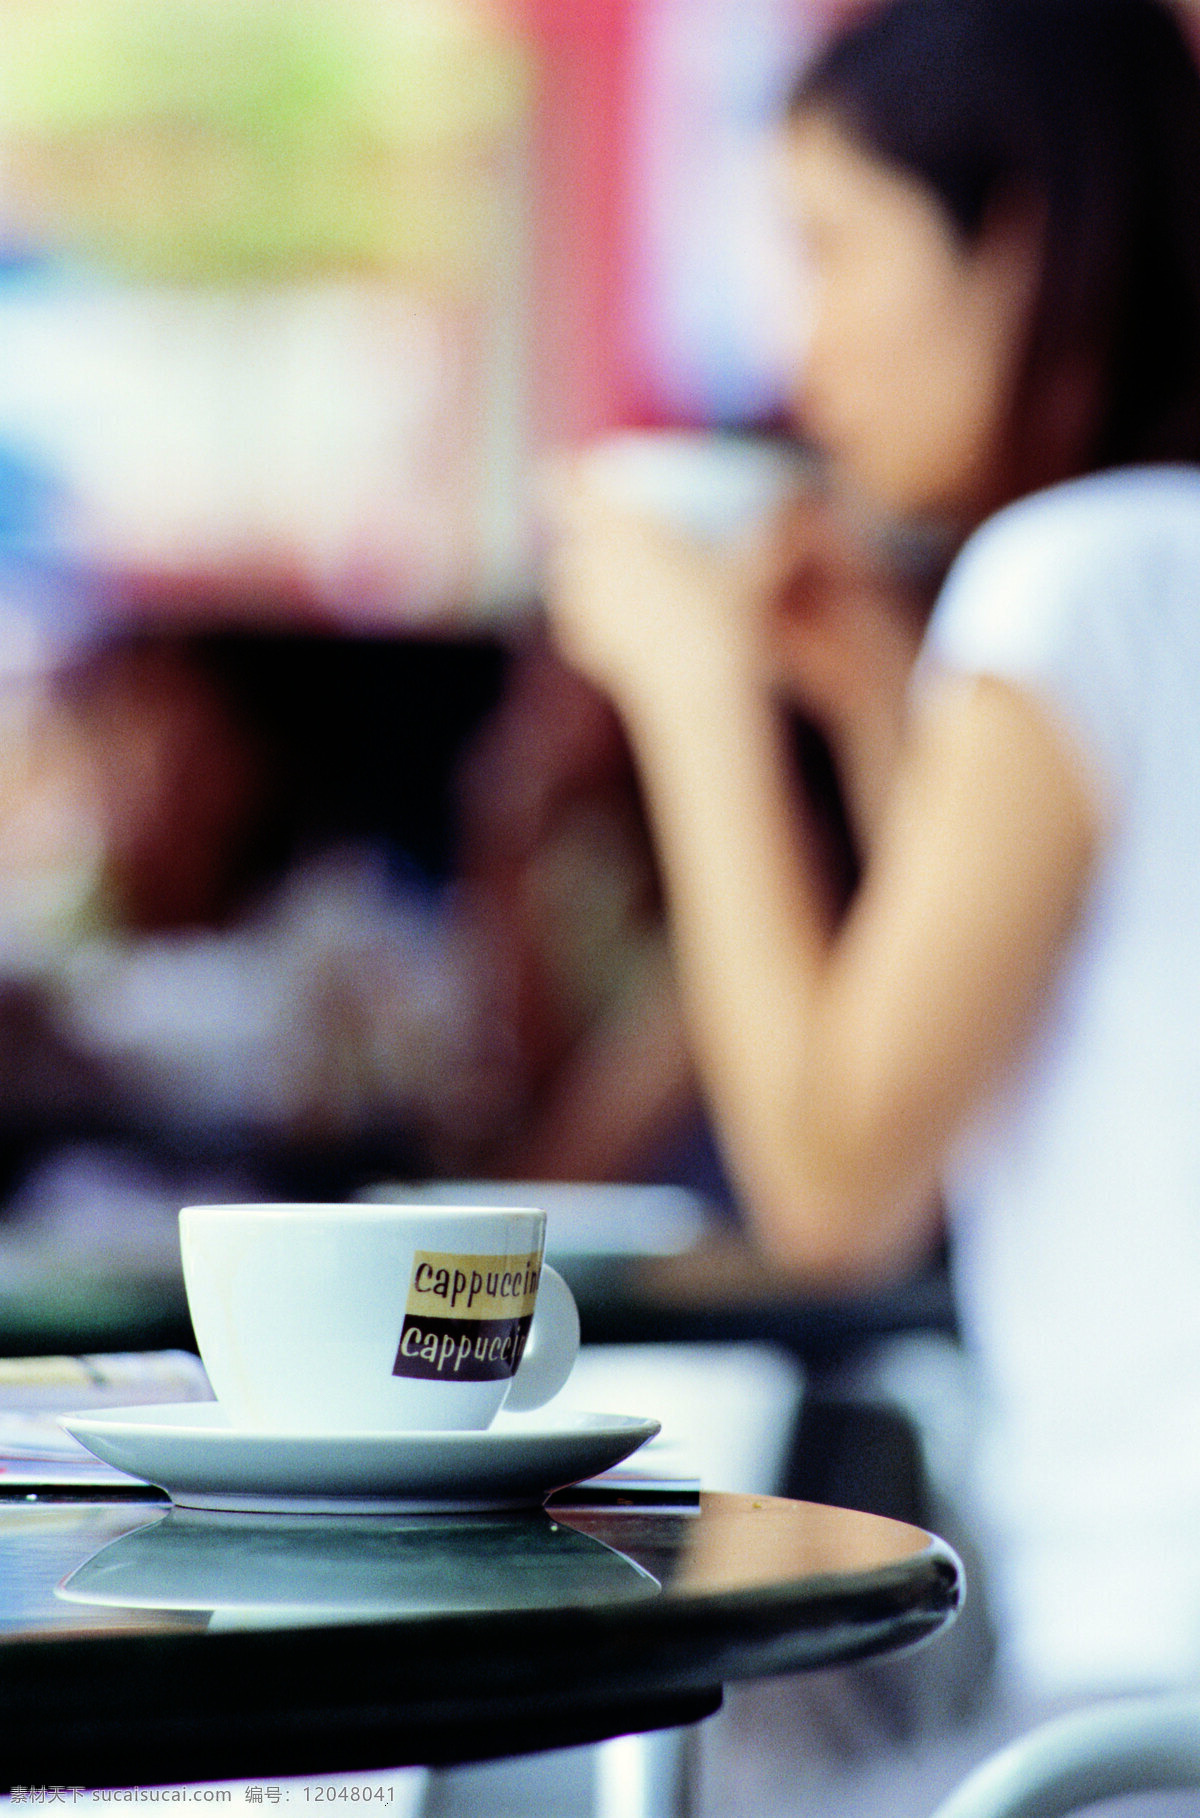 桌面 上 一杯 咖啡 摄影图片 喝咖啡 咖啡杯 美女 人物 手拿咖啡杯 品尝咖啡 咖啡文化 coffee 高清图片 咖啡厅 一杯咖啡 咖啡厅写真 咖啡图片 餐饮美食